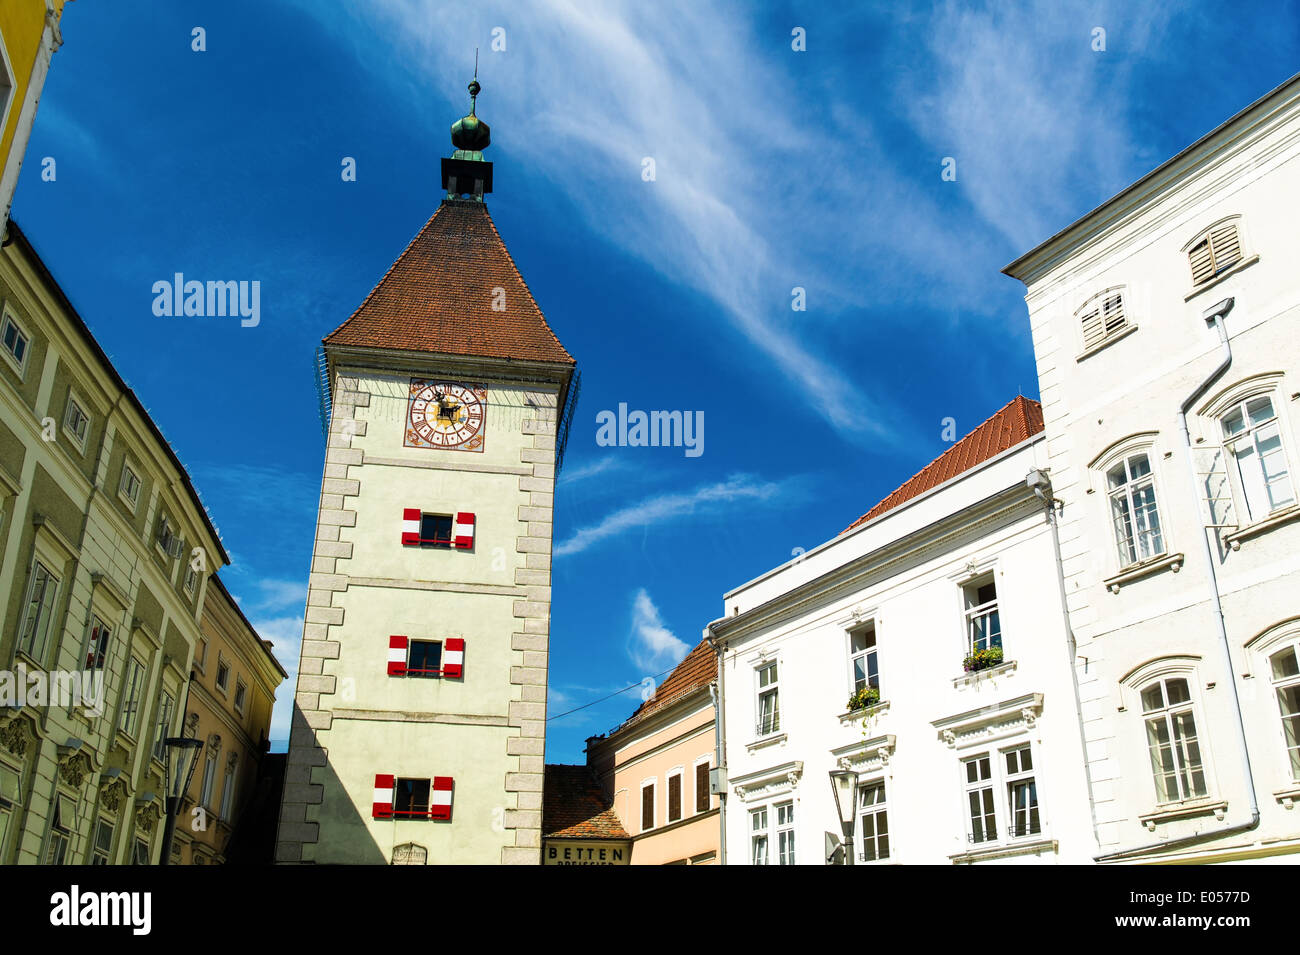 The old and nice city of Wels in Upper Austria, Austria., Die alte und schoene Stadt Wels in Oberoesterreich, oesterreich. Stock Photo